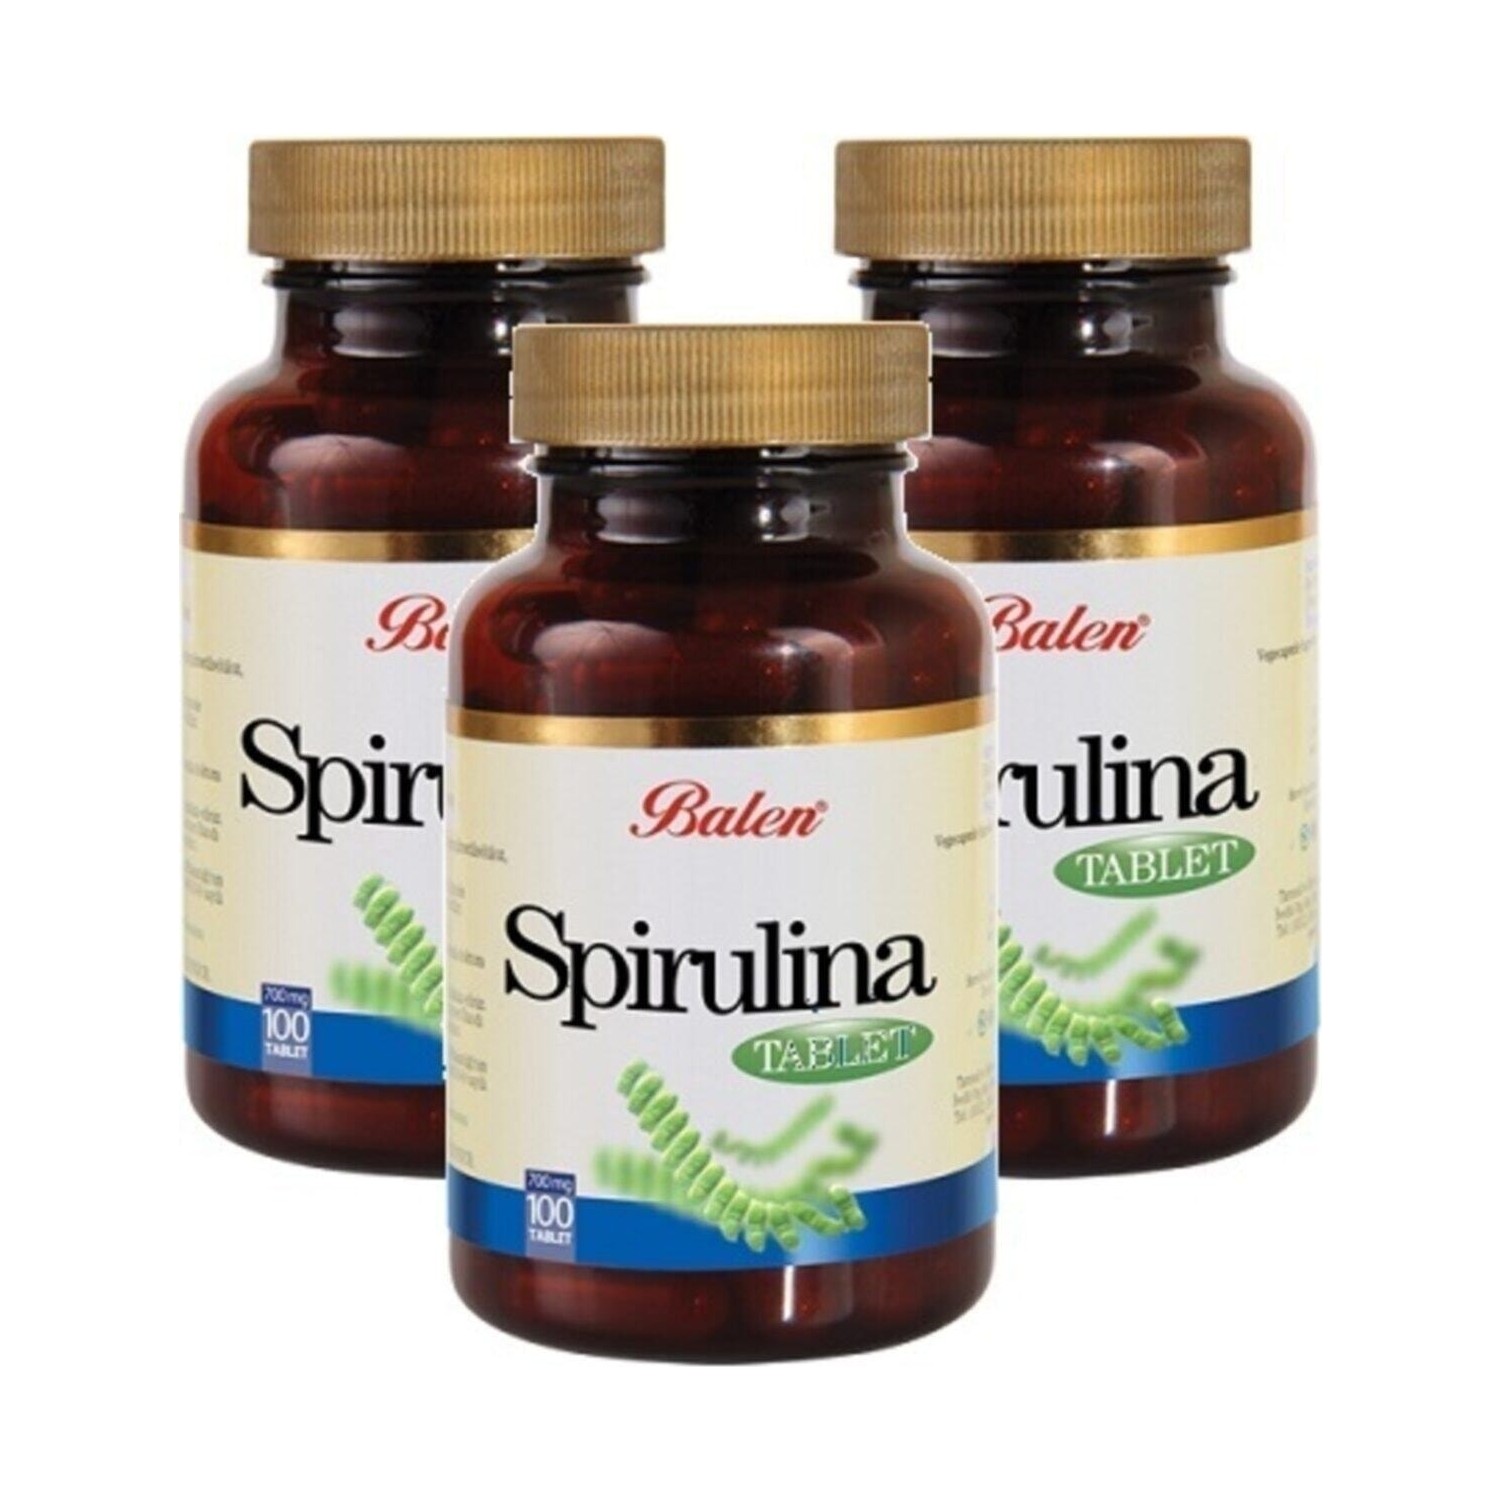 Пищевая добавка Balen спирулина 700 мг, 3 упаковки по 100 капсул laperva zinc 100 tablets 50 mg